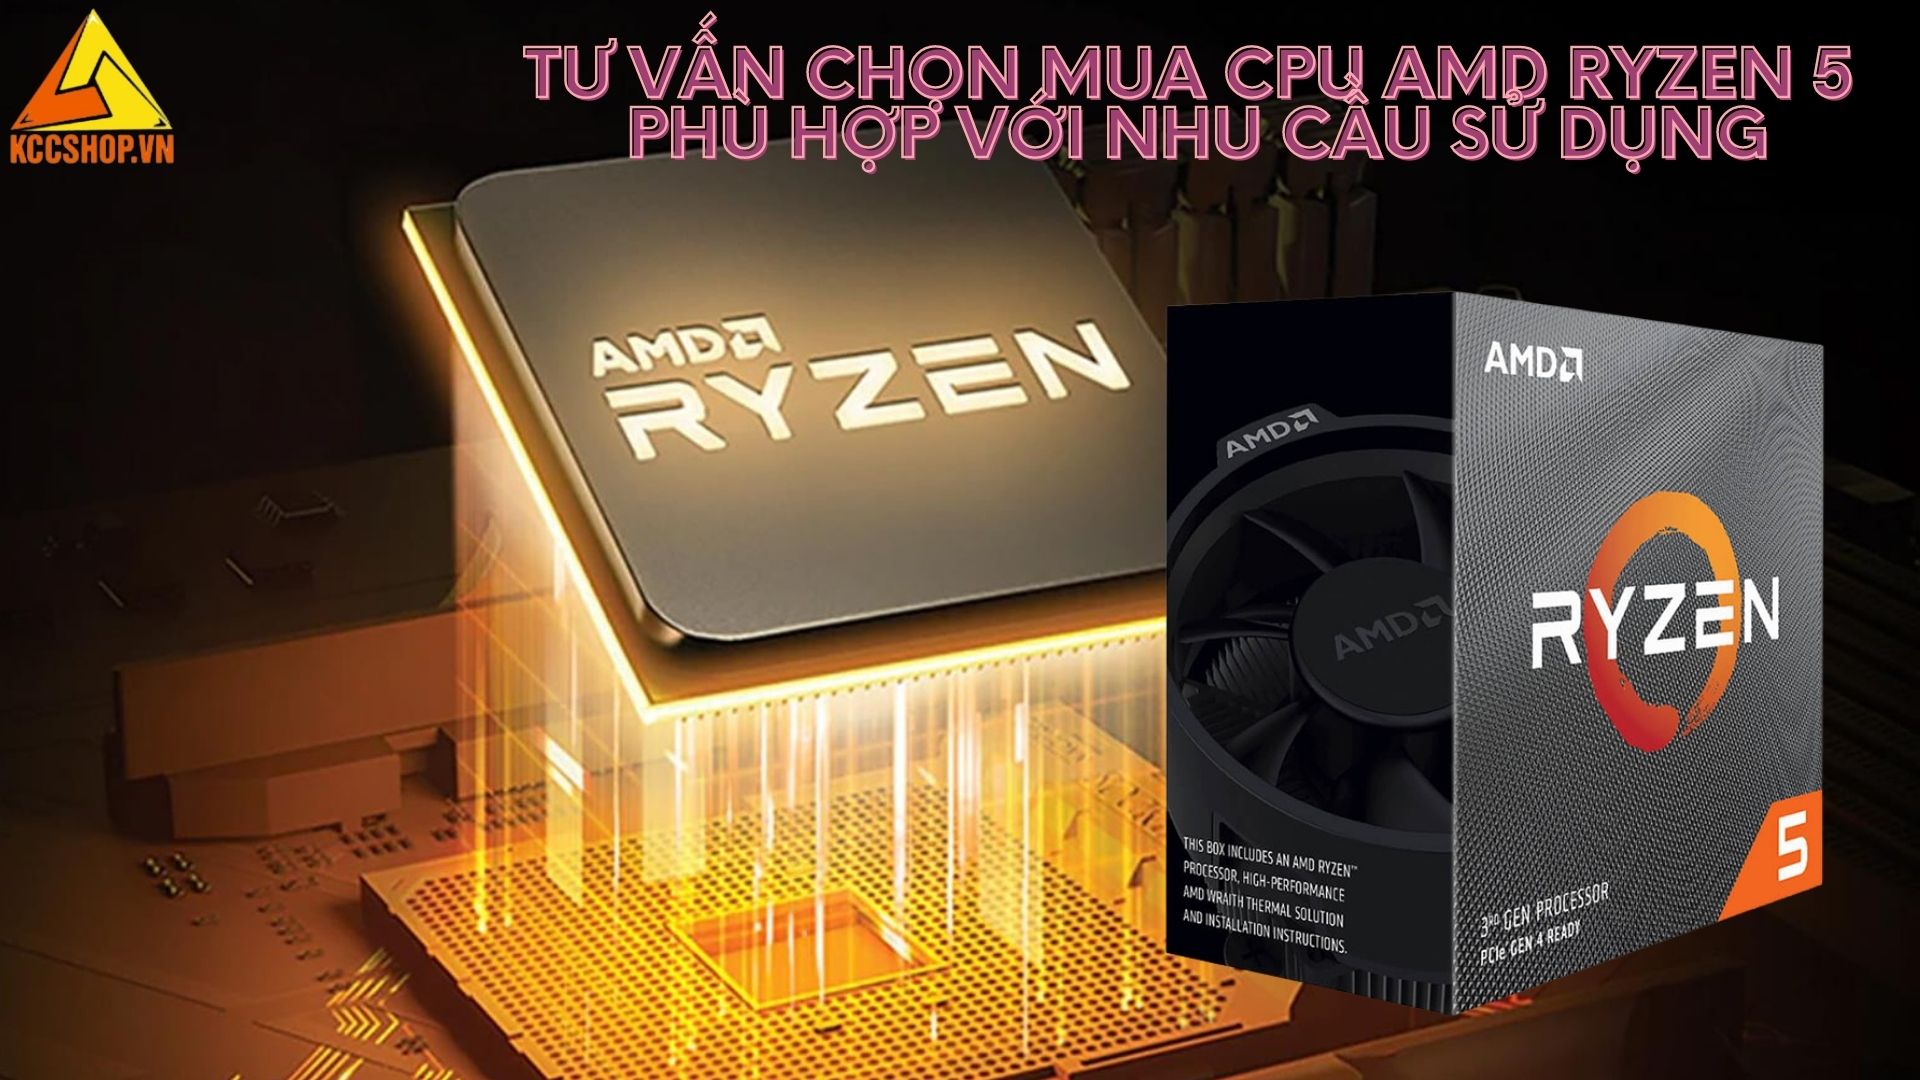 Tư vấn chọn mua CPU Amd Ryzen 5 phù hợp với nhu cầu sử dụng